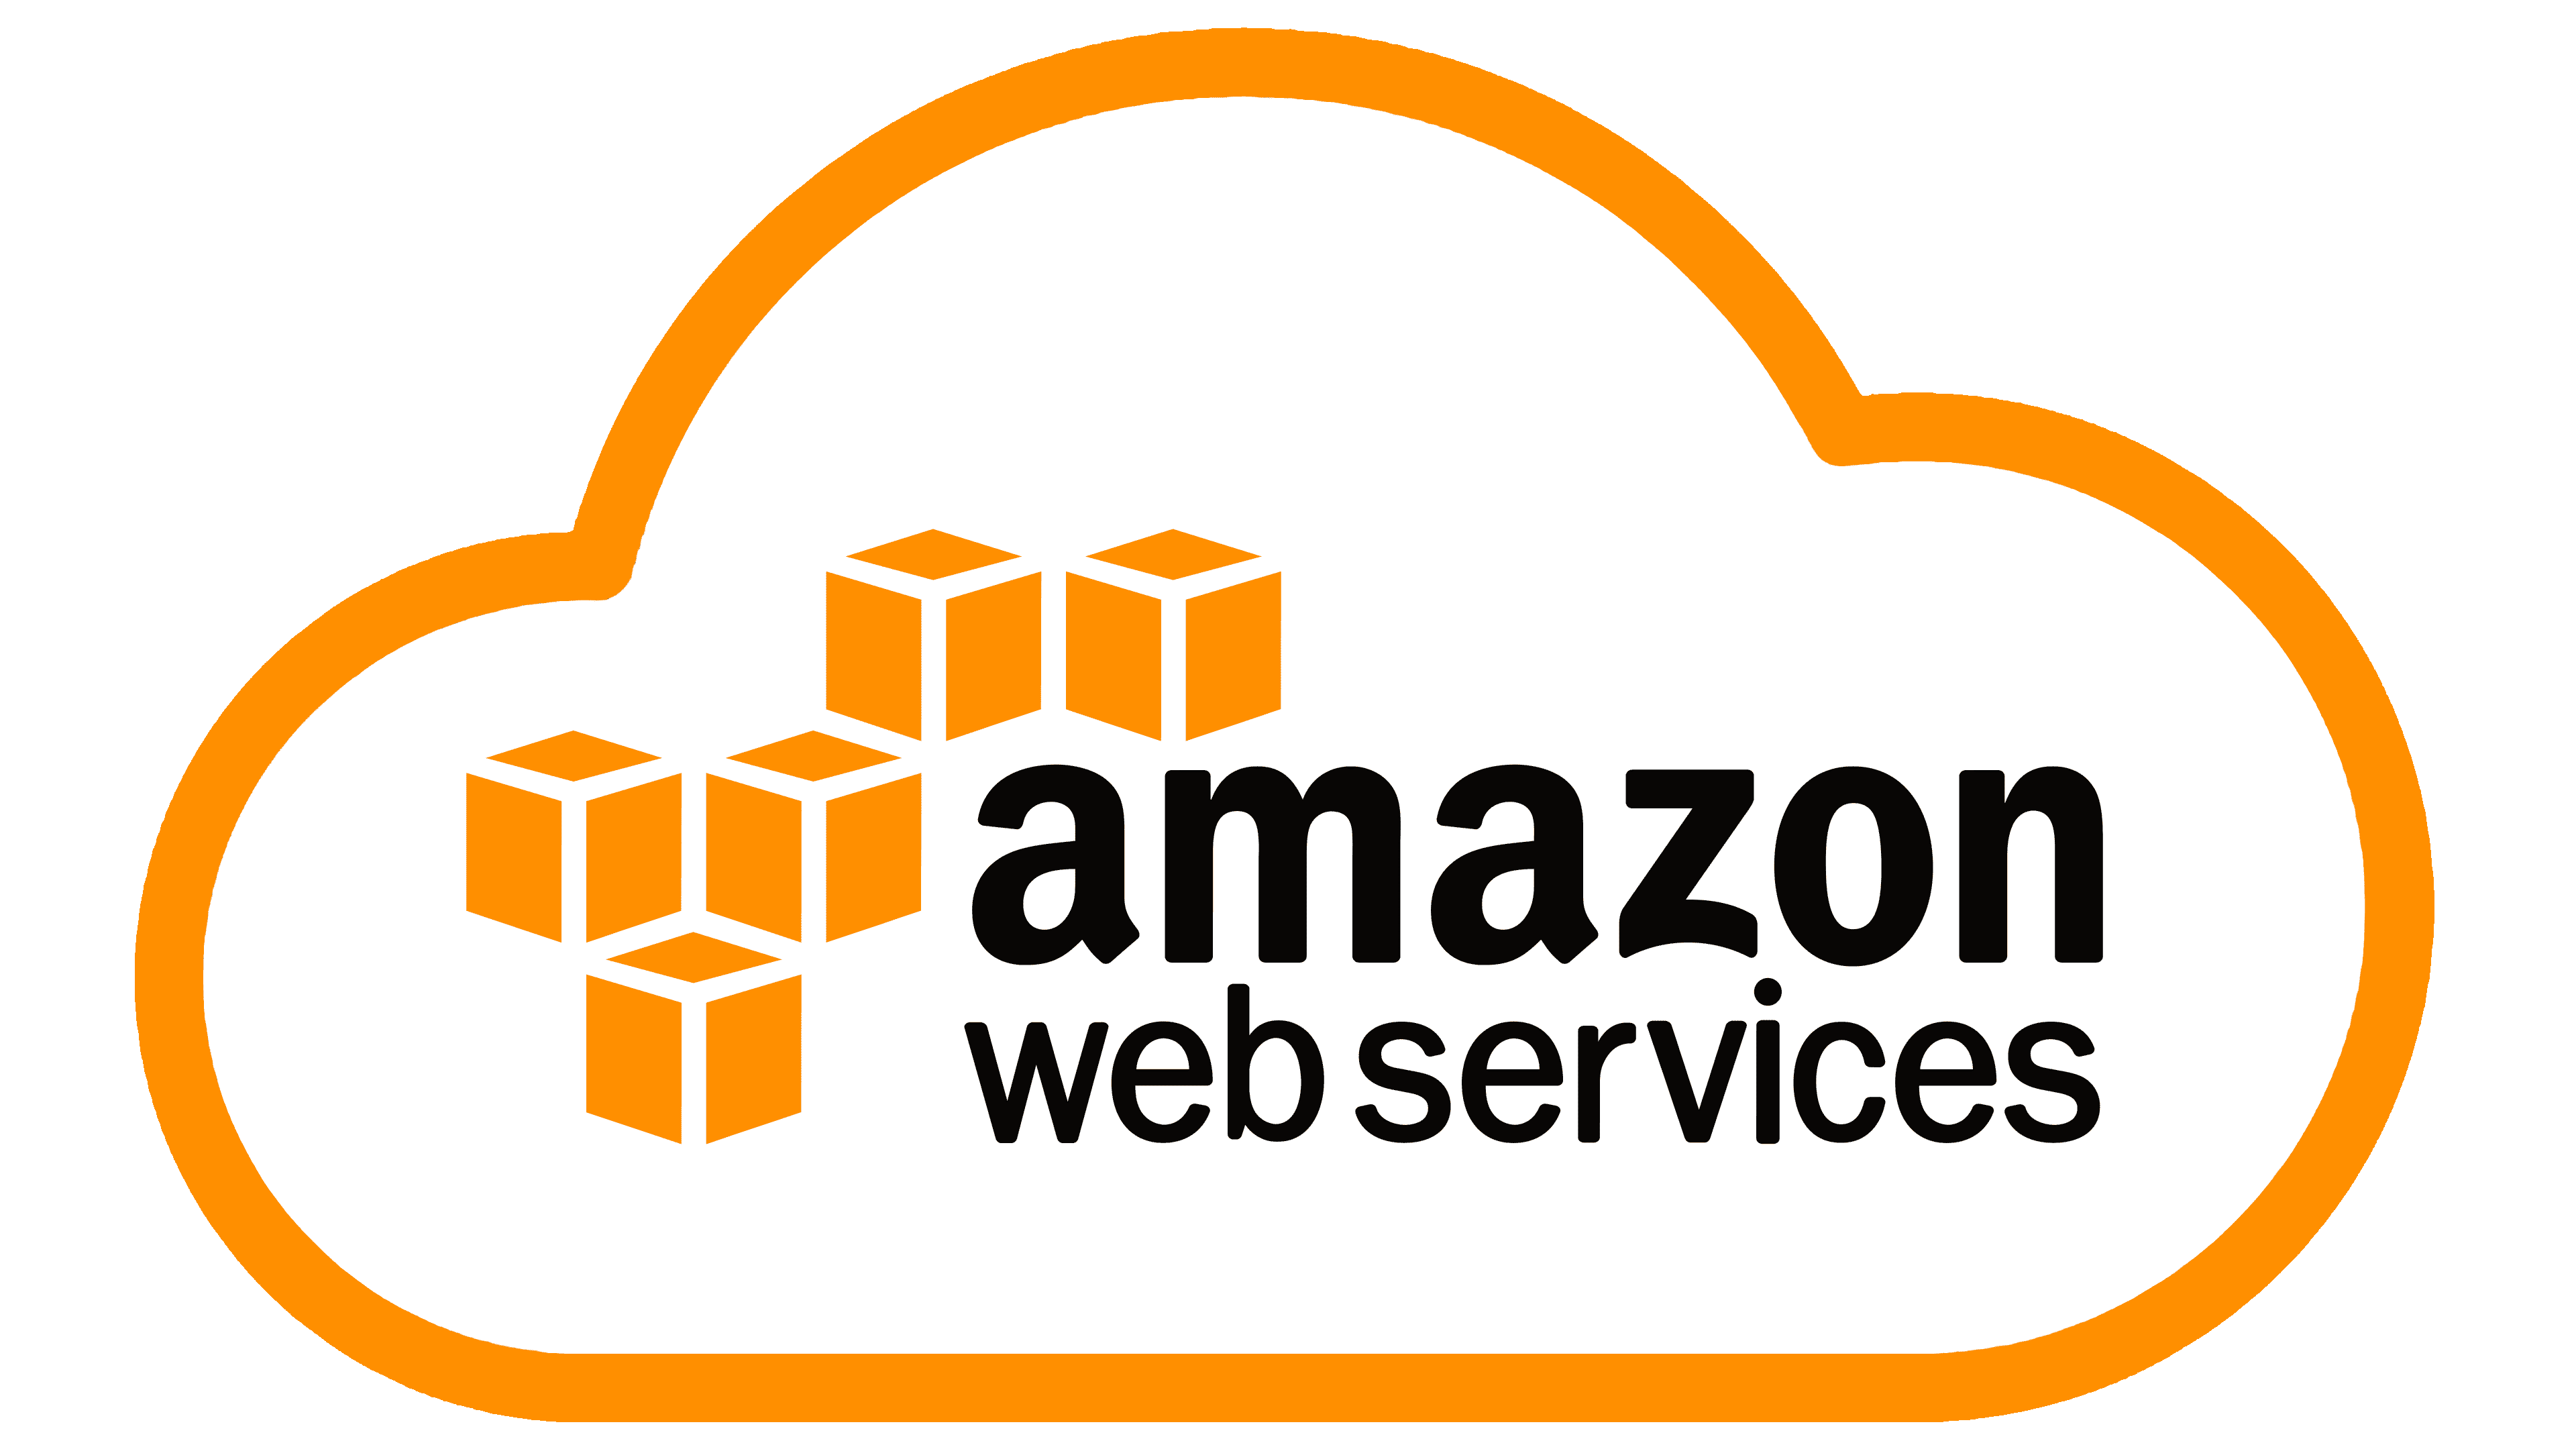 Amazon облачные сервисы. Amazon web services. Amazon web services логотип. Amazon web services (AWS). AWS logo.